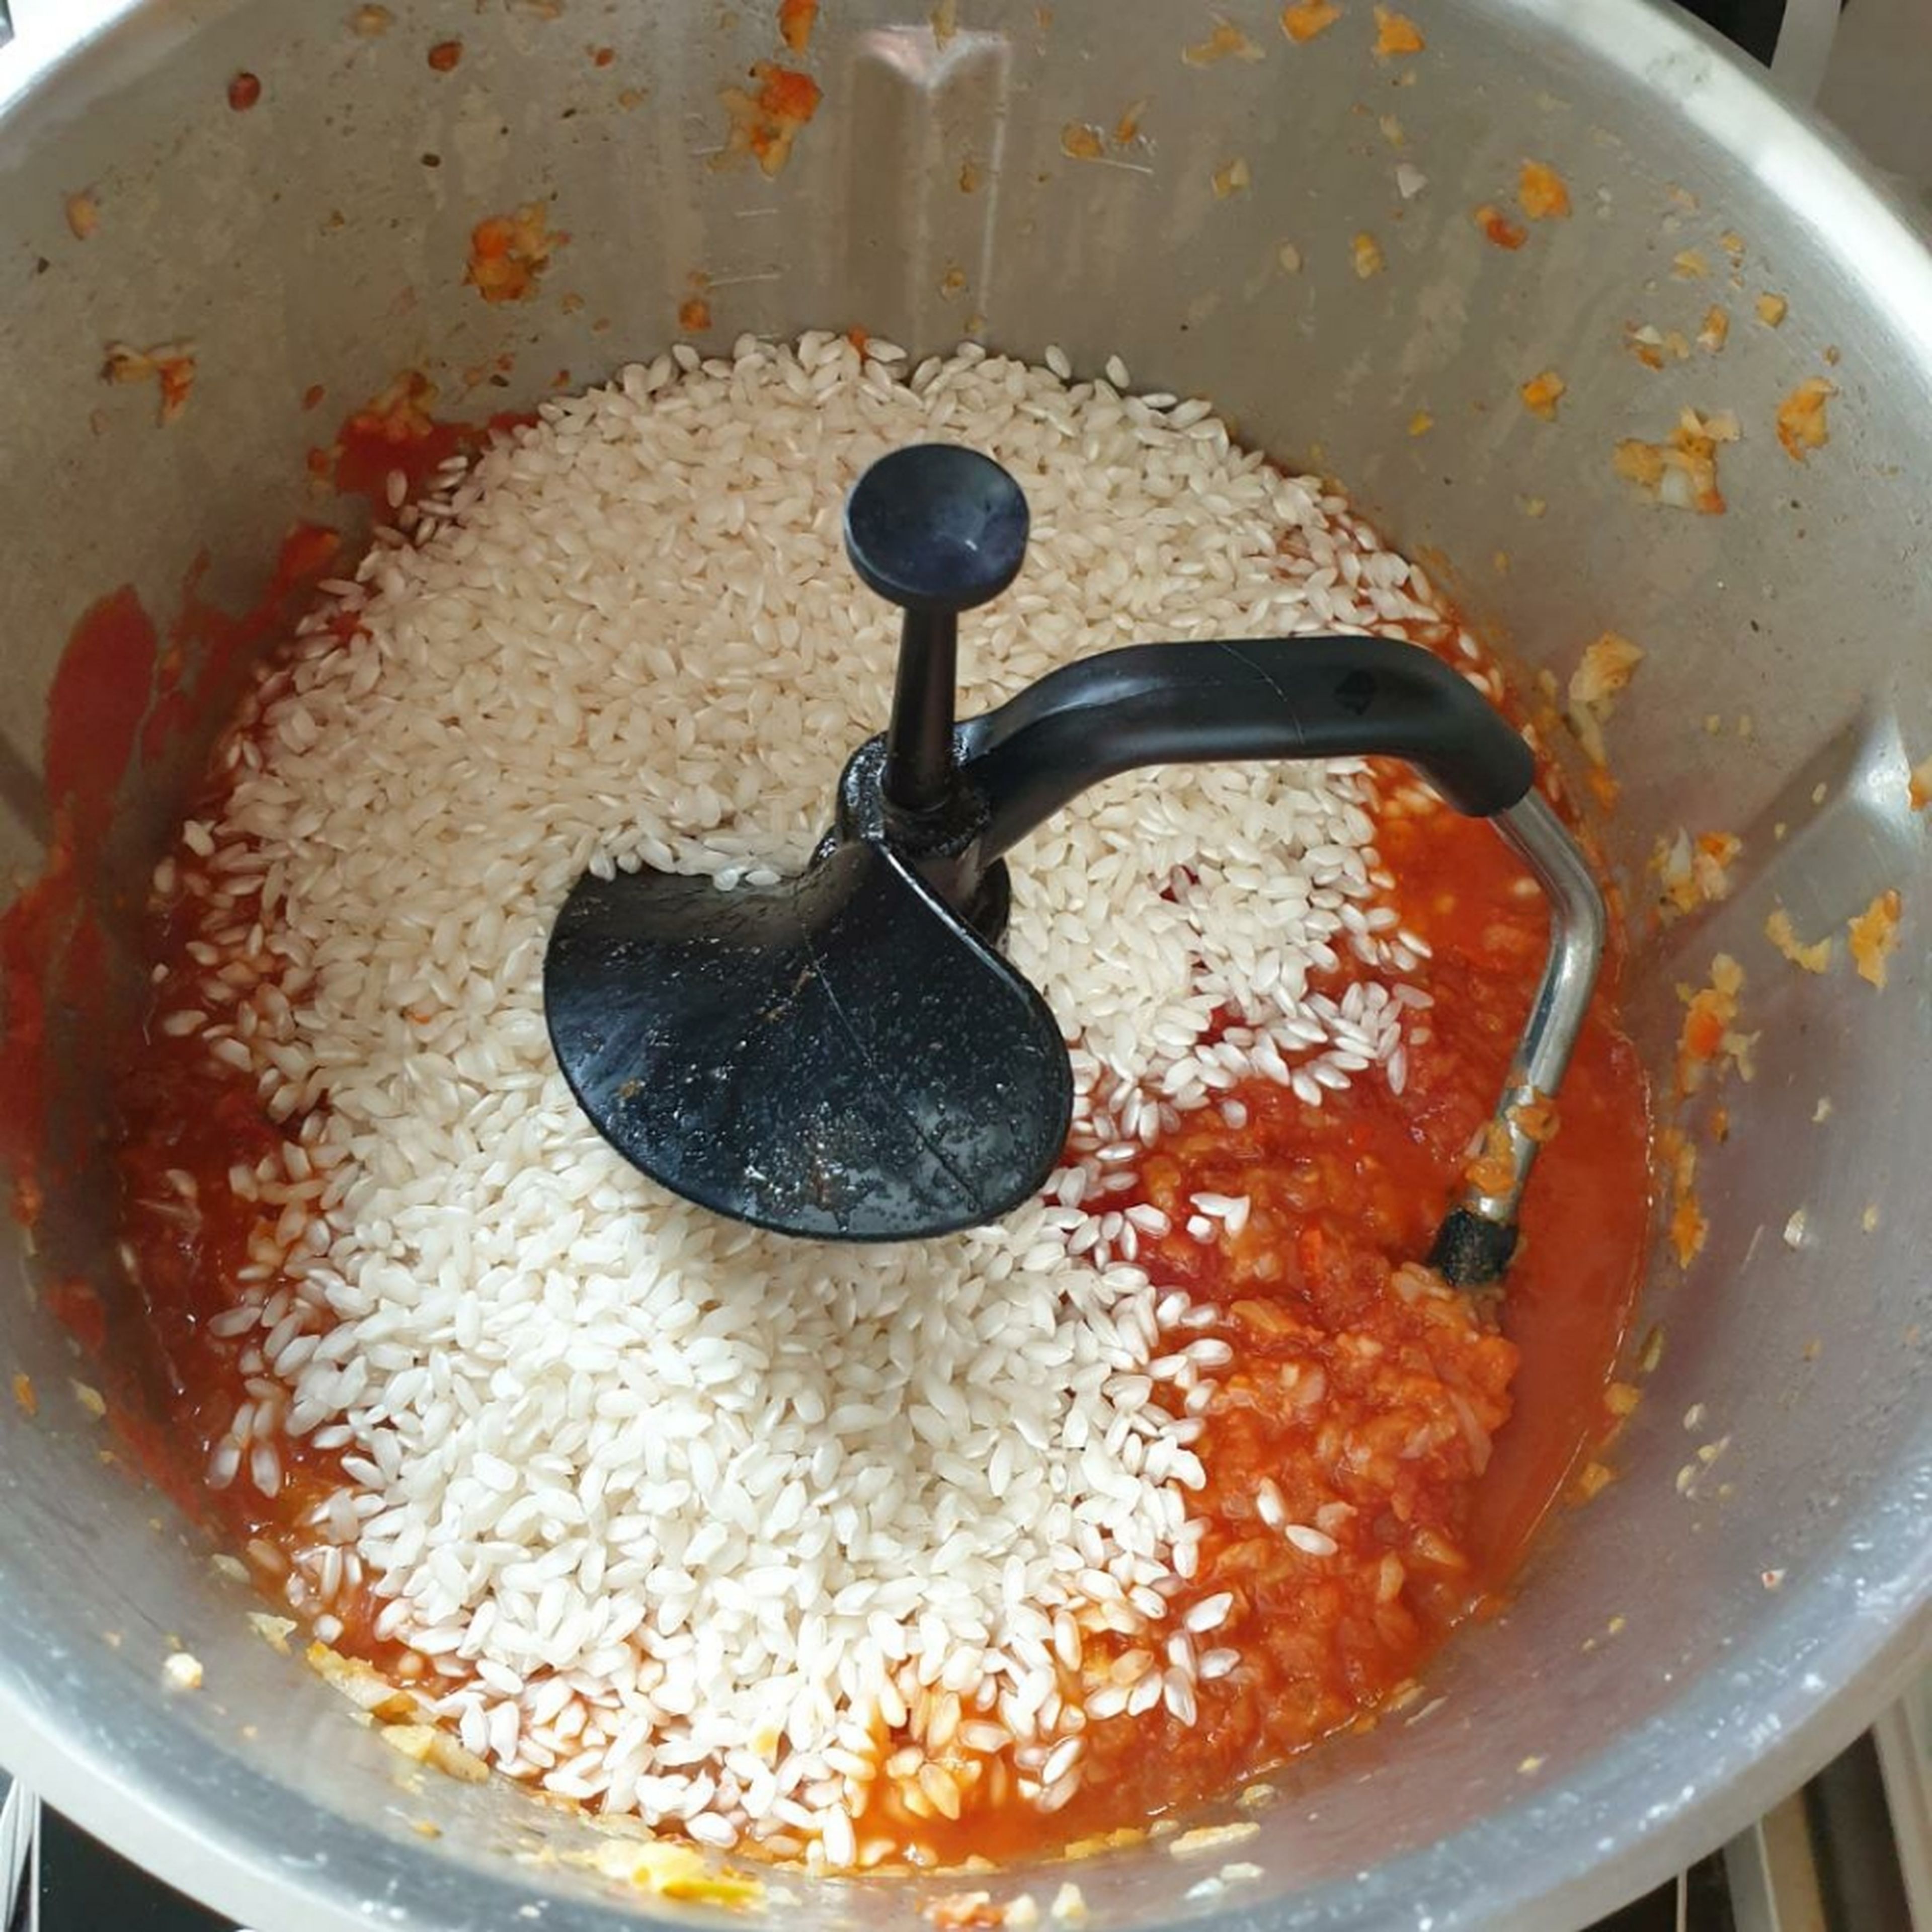 Im Anschluss den Risottoreis und die Dose geschälte Tomaten hinzugeben, den Deckel ohne Messbecher schließen und kurz mit anbraten (3D-Rührer | Stufe 3 | 140°C | 3 Minuten). Den Deckel kurz öffnen und nach und nach den Weißwein und den Gemüsefond zugeben und alles bei geschlossenem Deckel, ohne Messbecher, köcheln lassen (3D-Rührer | Stufe 3 | 94°C | 18 Minuten).